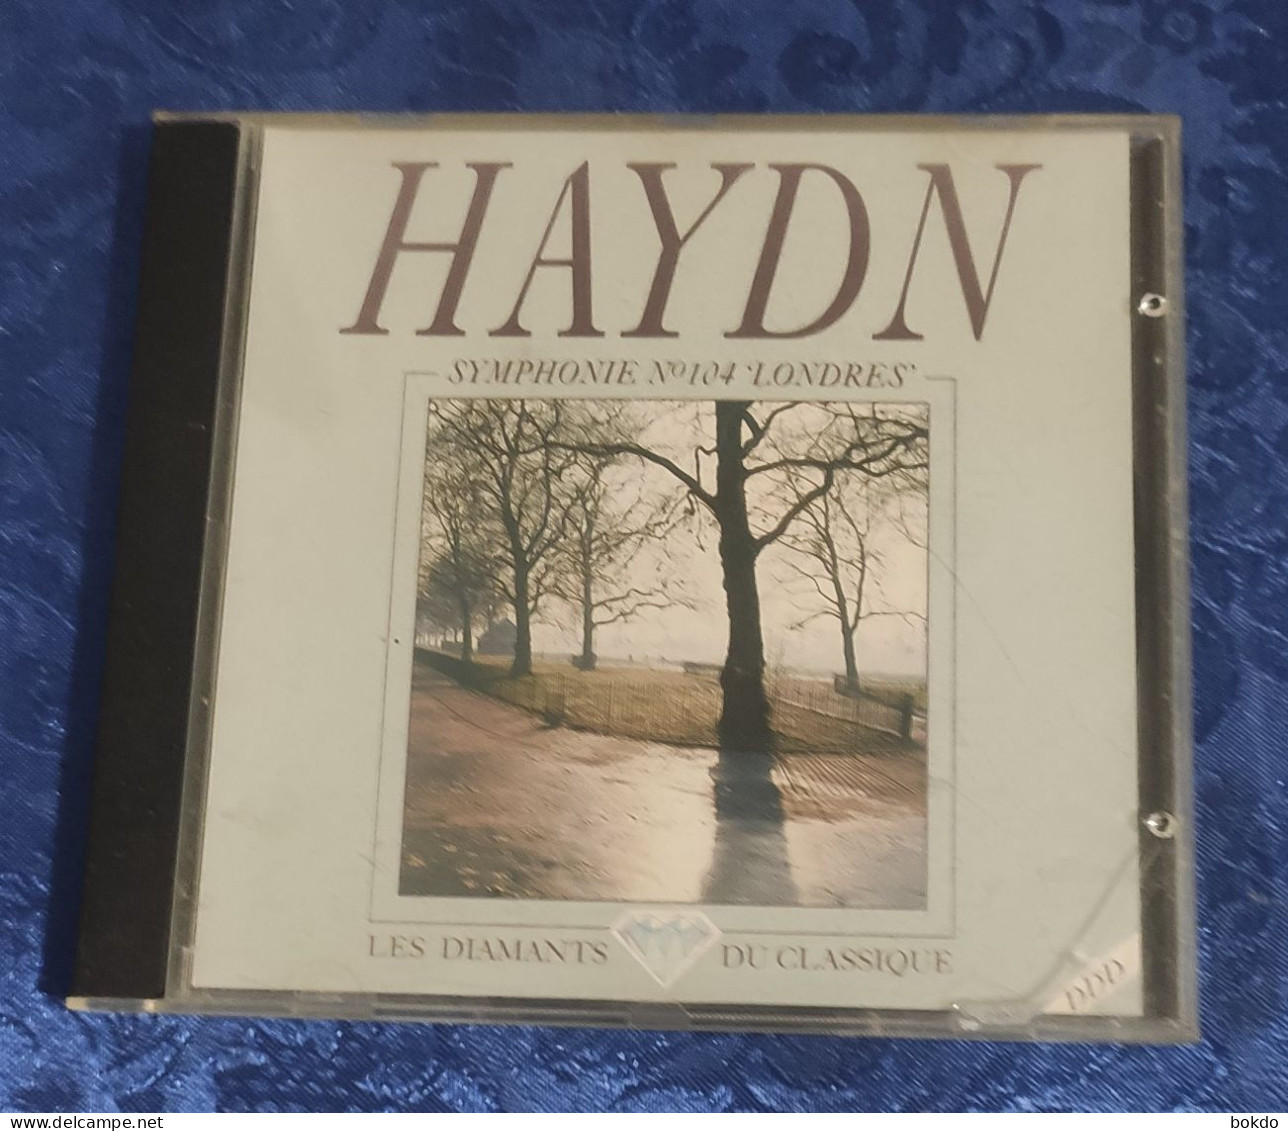 HAYDN - Symphonie N° 104 "londres" - Clásica